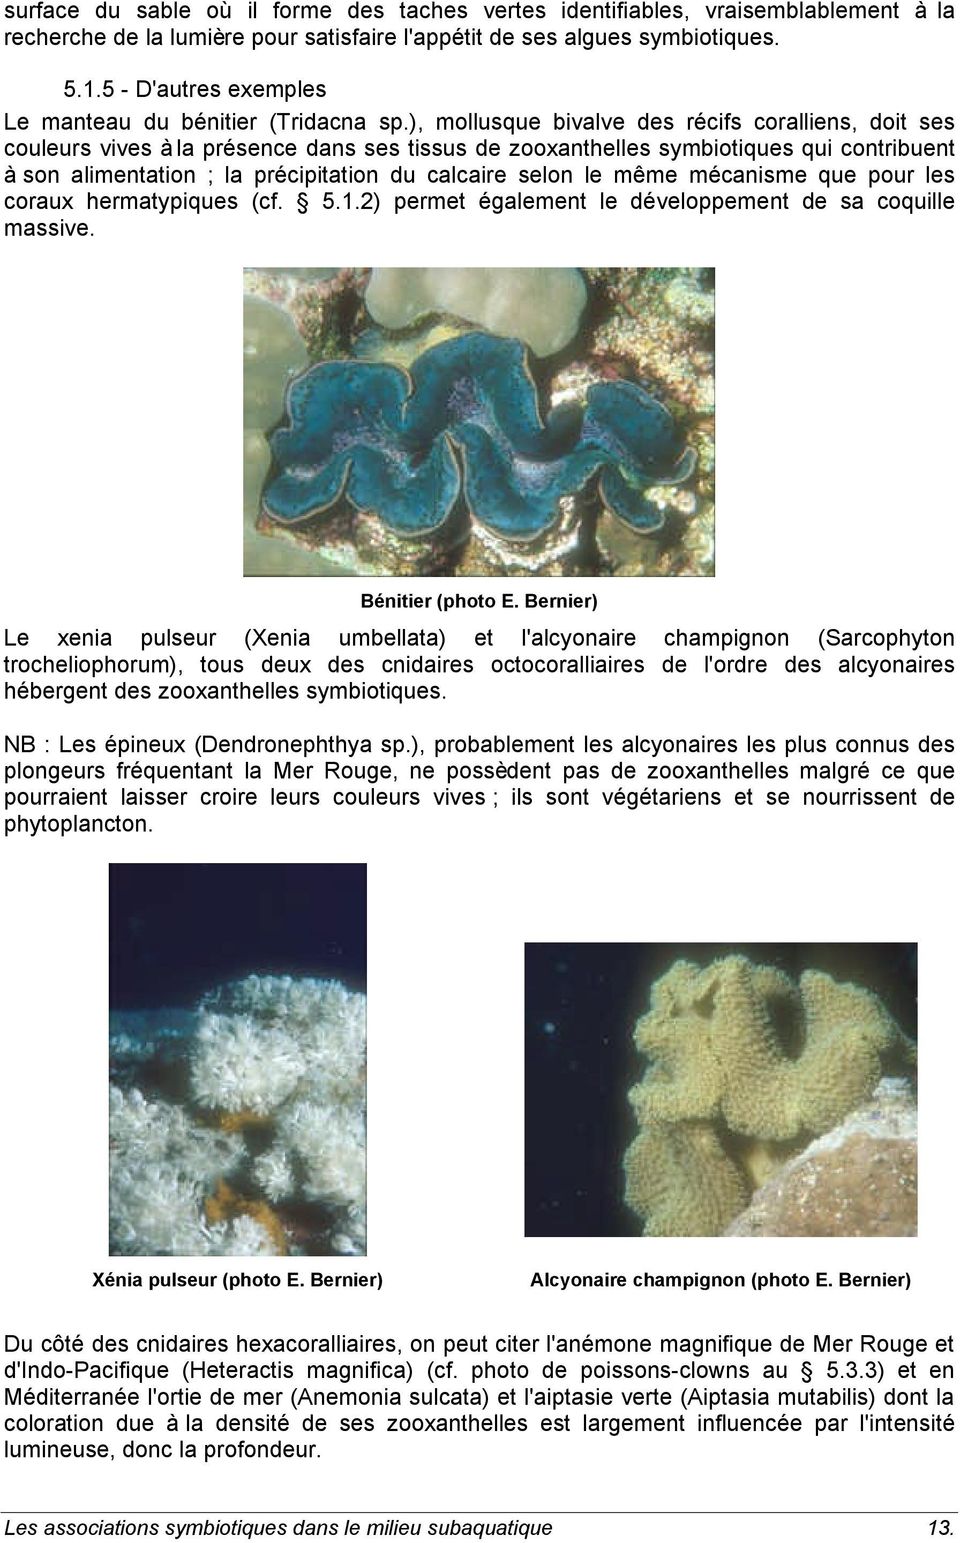 ), mollusque bivalve des récifs coralliens, doit ses couleurs vives à la présence dans ses tissus de zooxanthelles symbiotiques qui contribuent à son alimentation ; la précipitation du calcaire selon